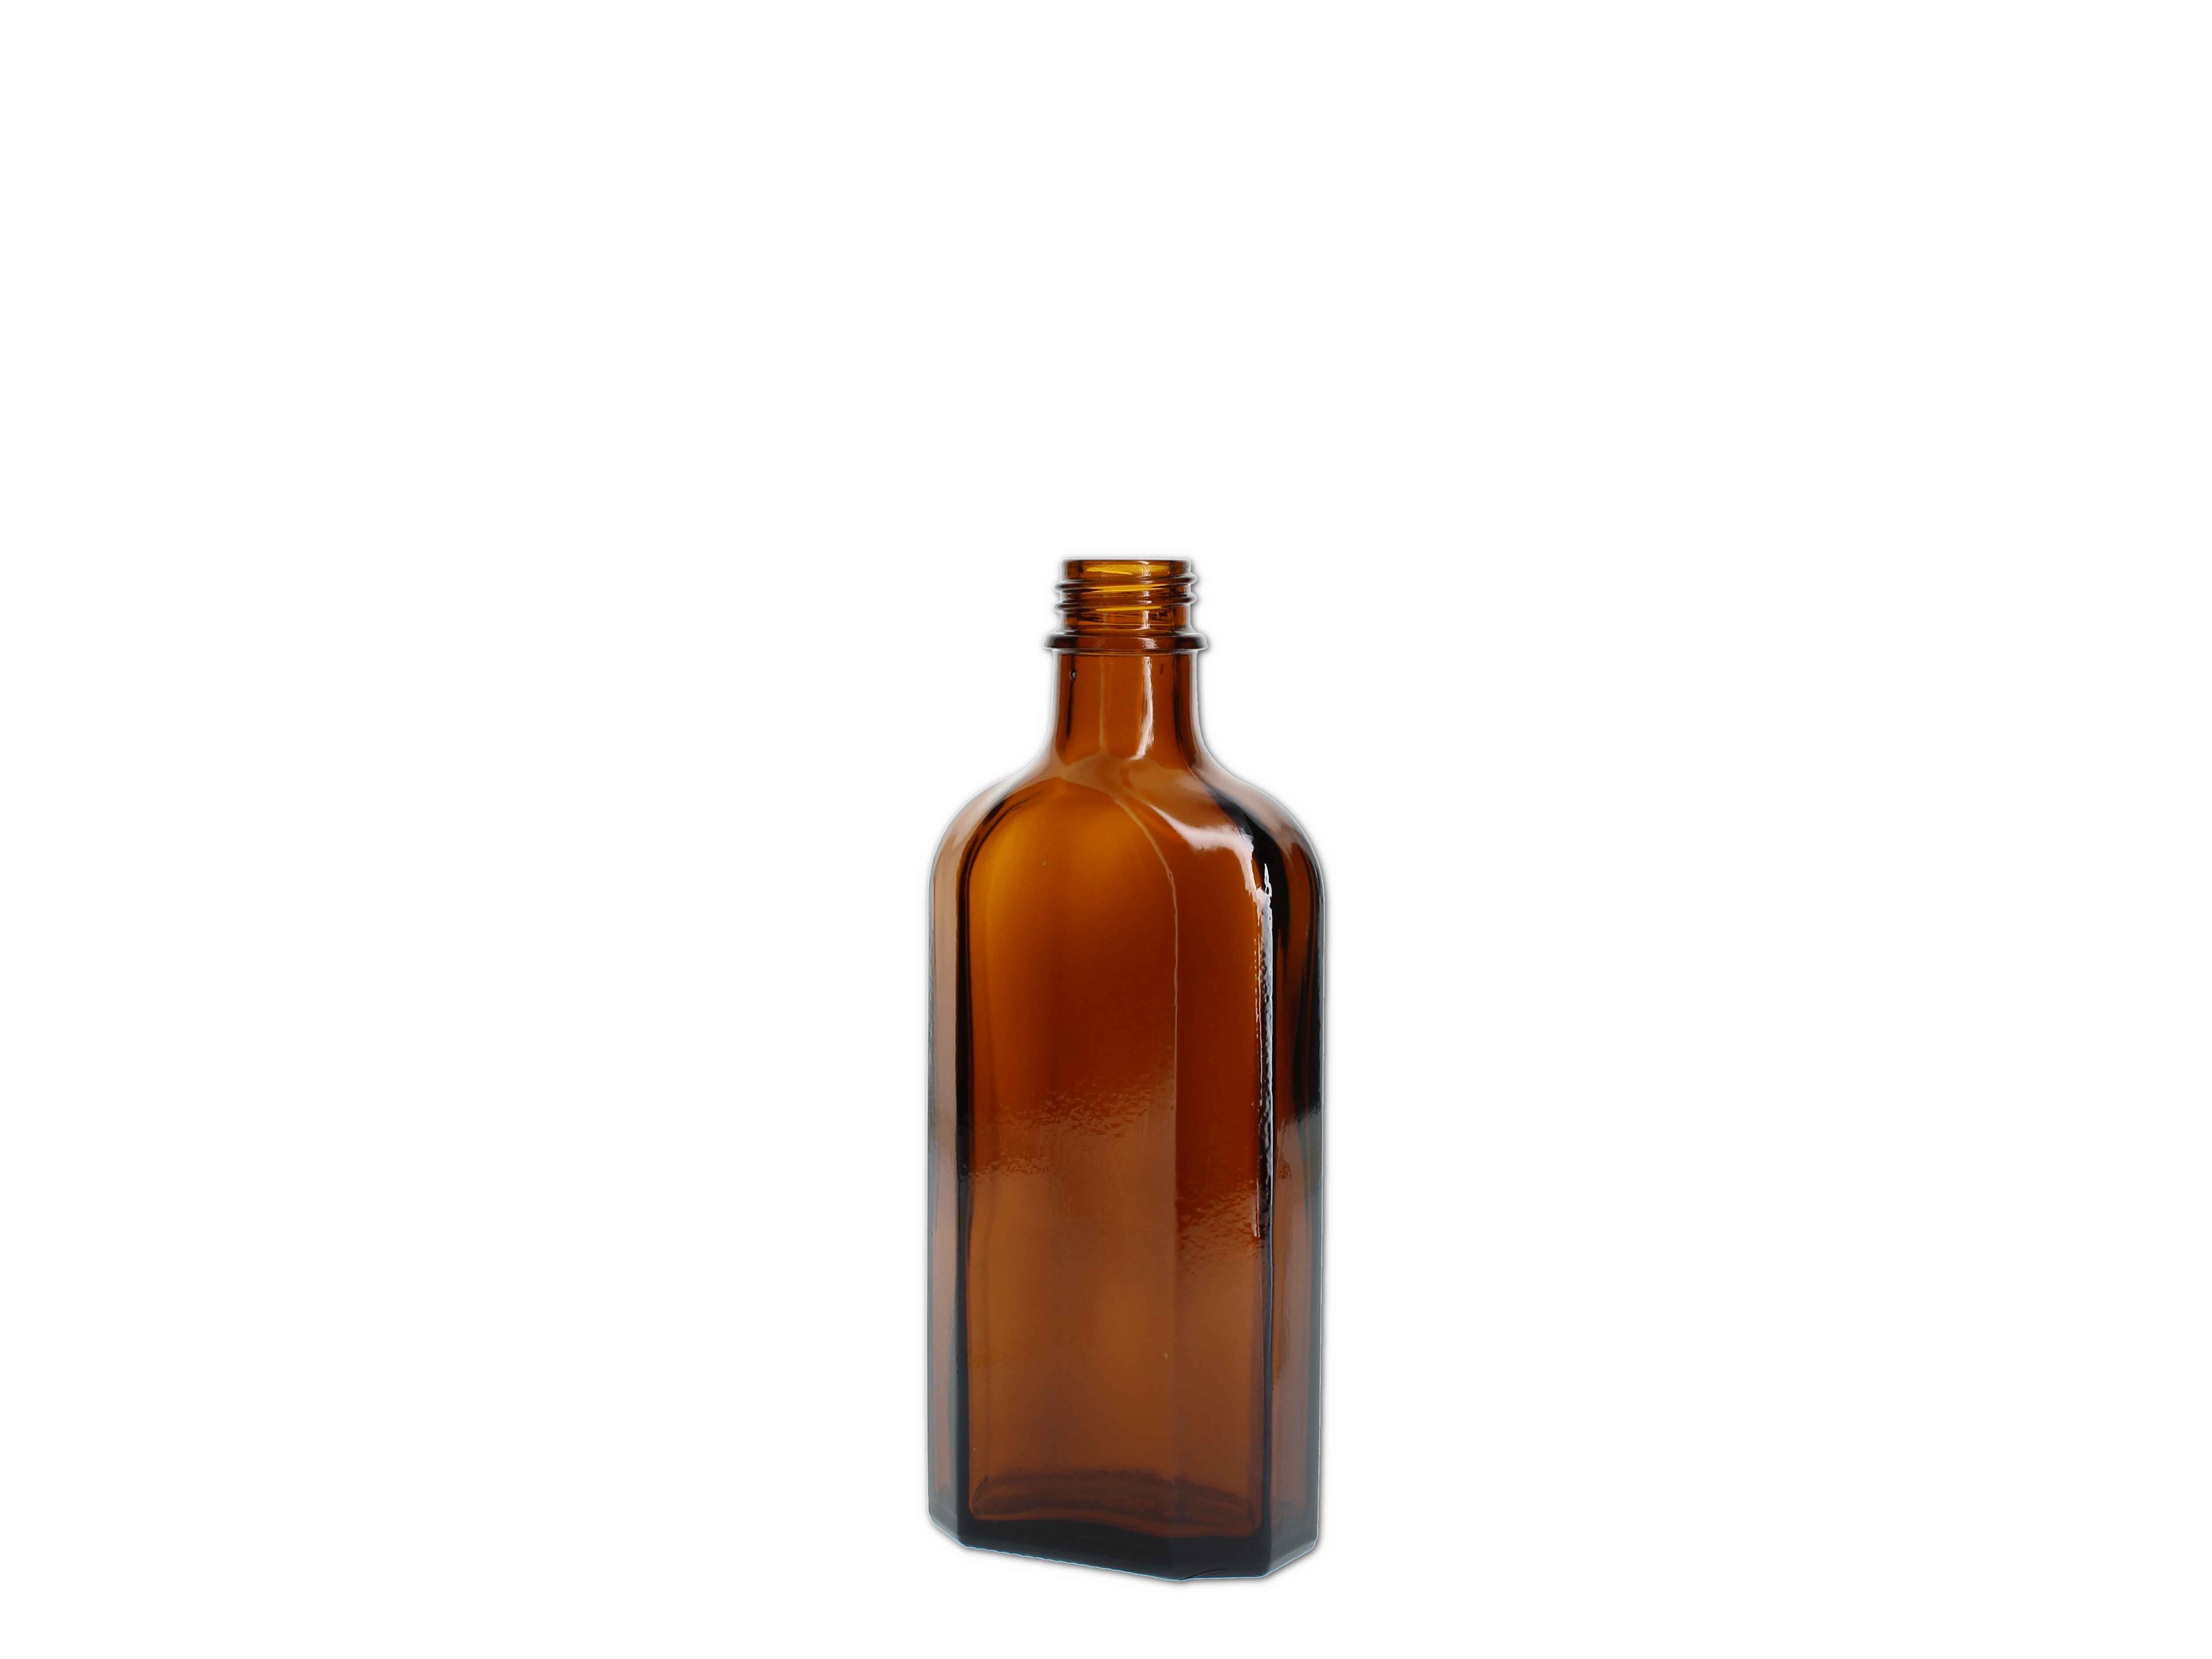    Meplatflasche braun - DIN22 - 150ml